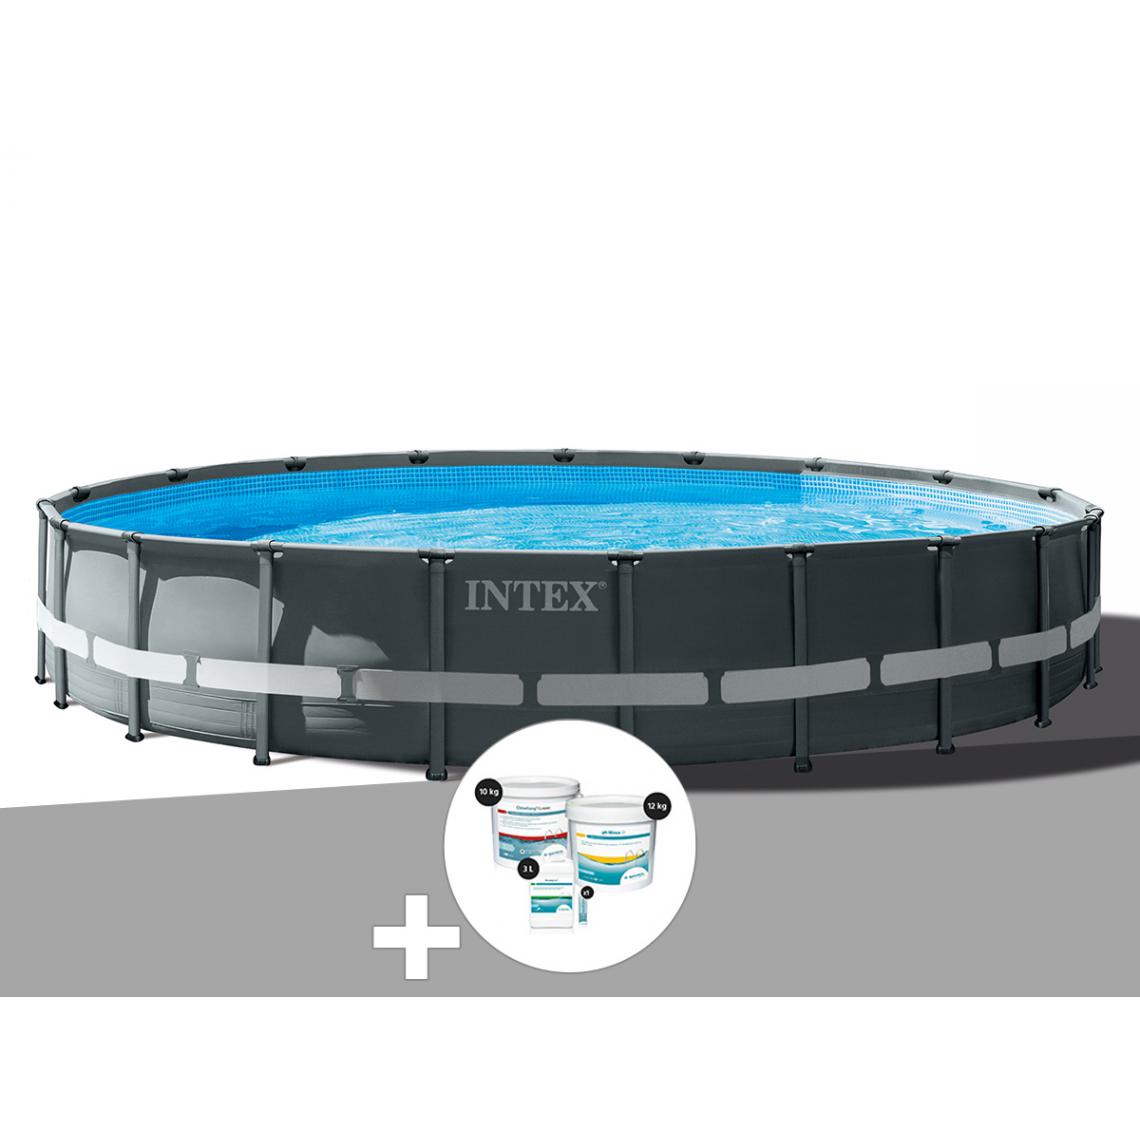 Intex - Kit piscine tubulaire Intex Ultra XTR Frame ronde 6,10 x 1,22 m + Kit de traitement au chlore - Piscine Tubulaire